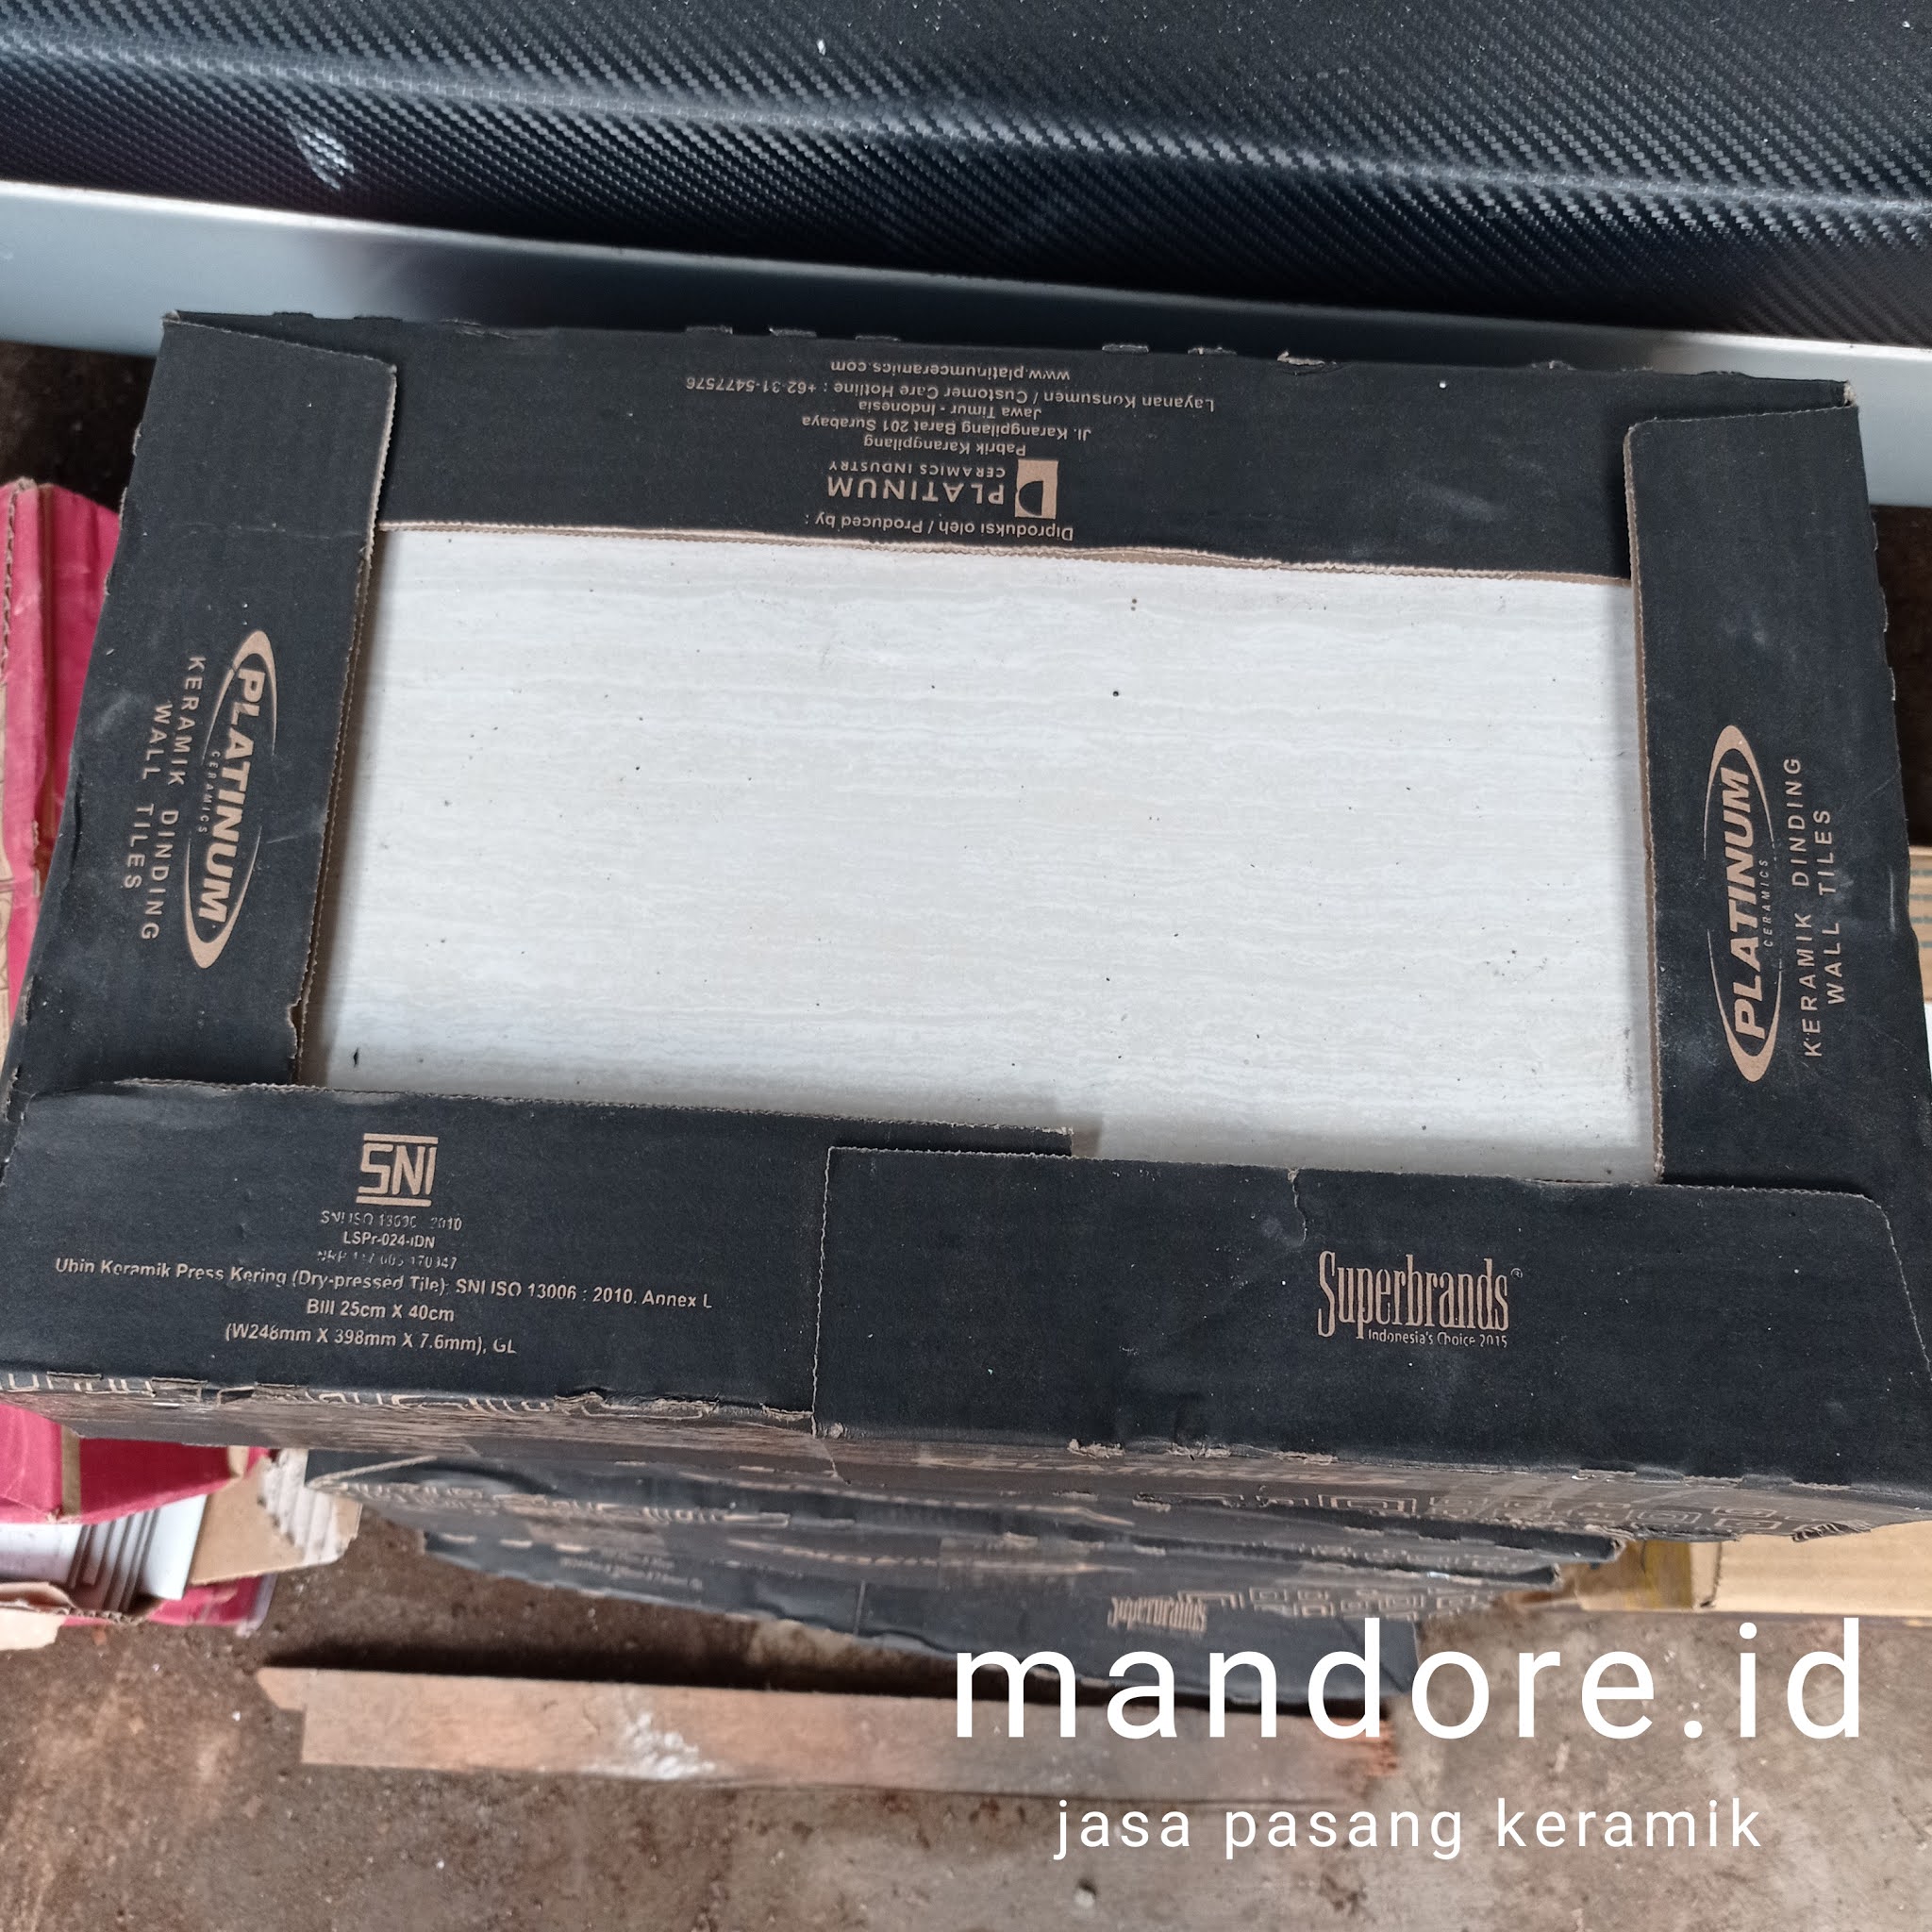 Update Harga  Keramik  Dinding  25x40  Terbaru Mandore id